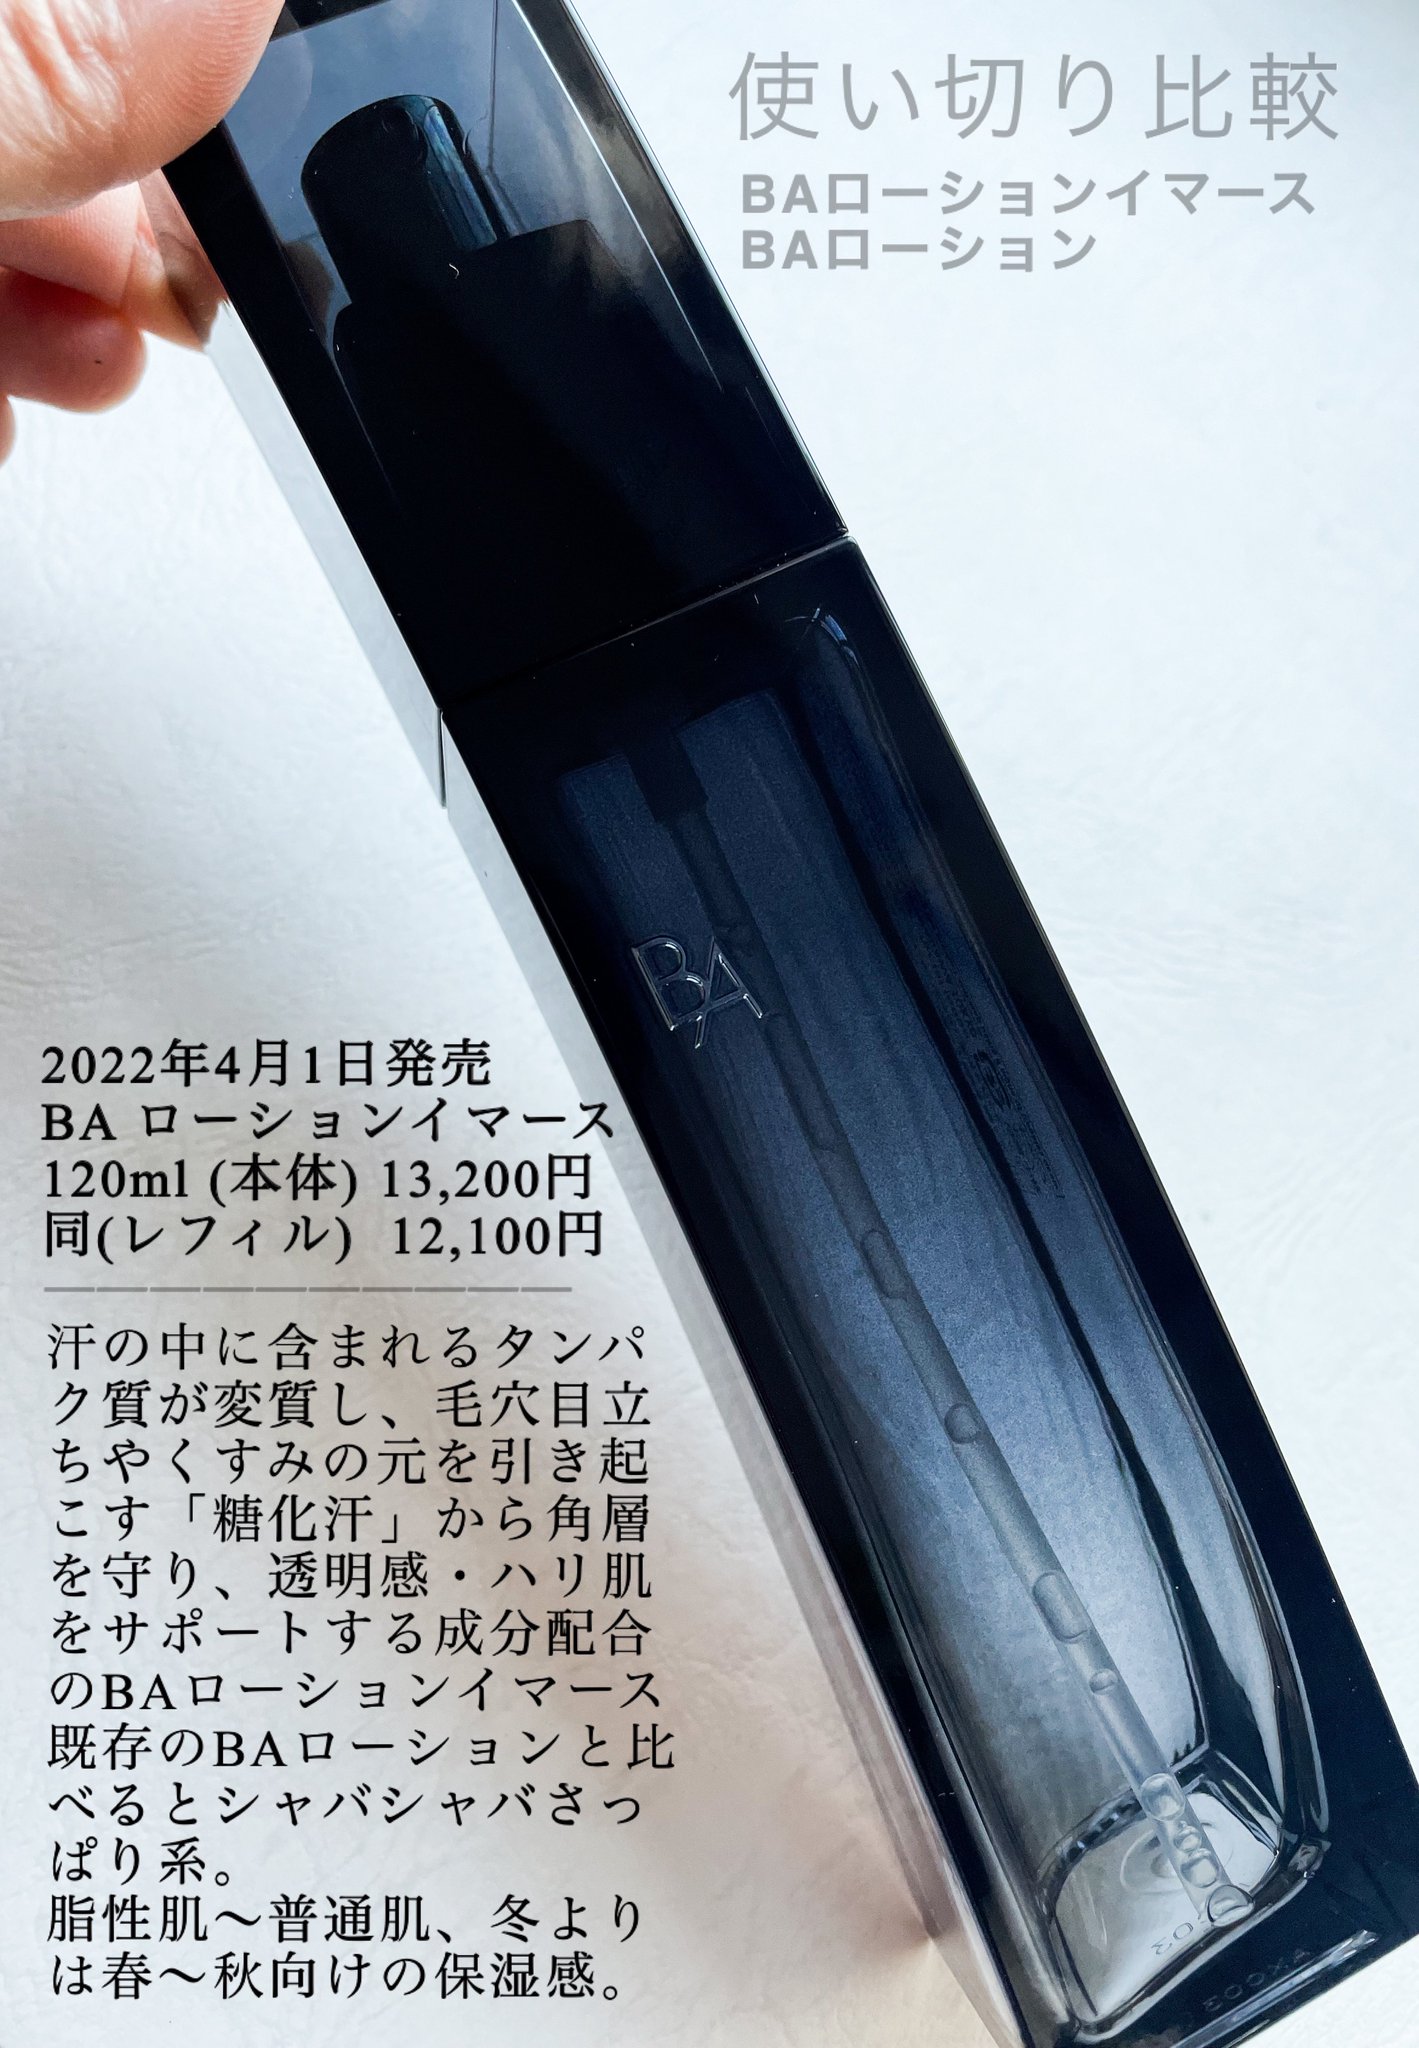 Fujifumi on Twitter: "愛用リピ品のポーラBAローションと4/1発売された新製品BAローションイマースの使い切り比較。(イ